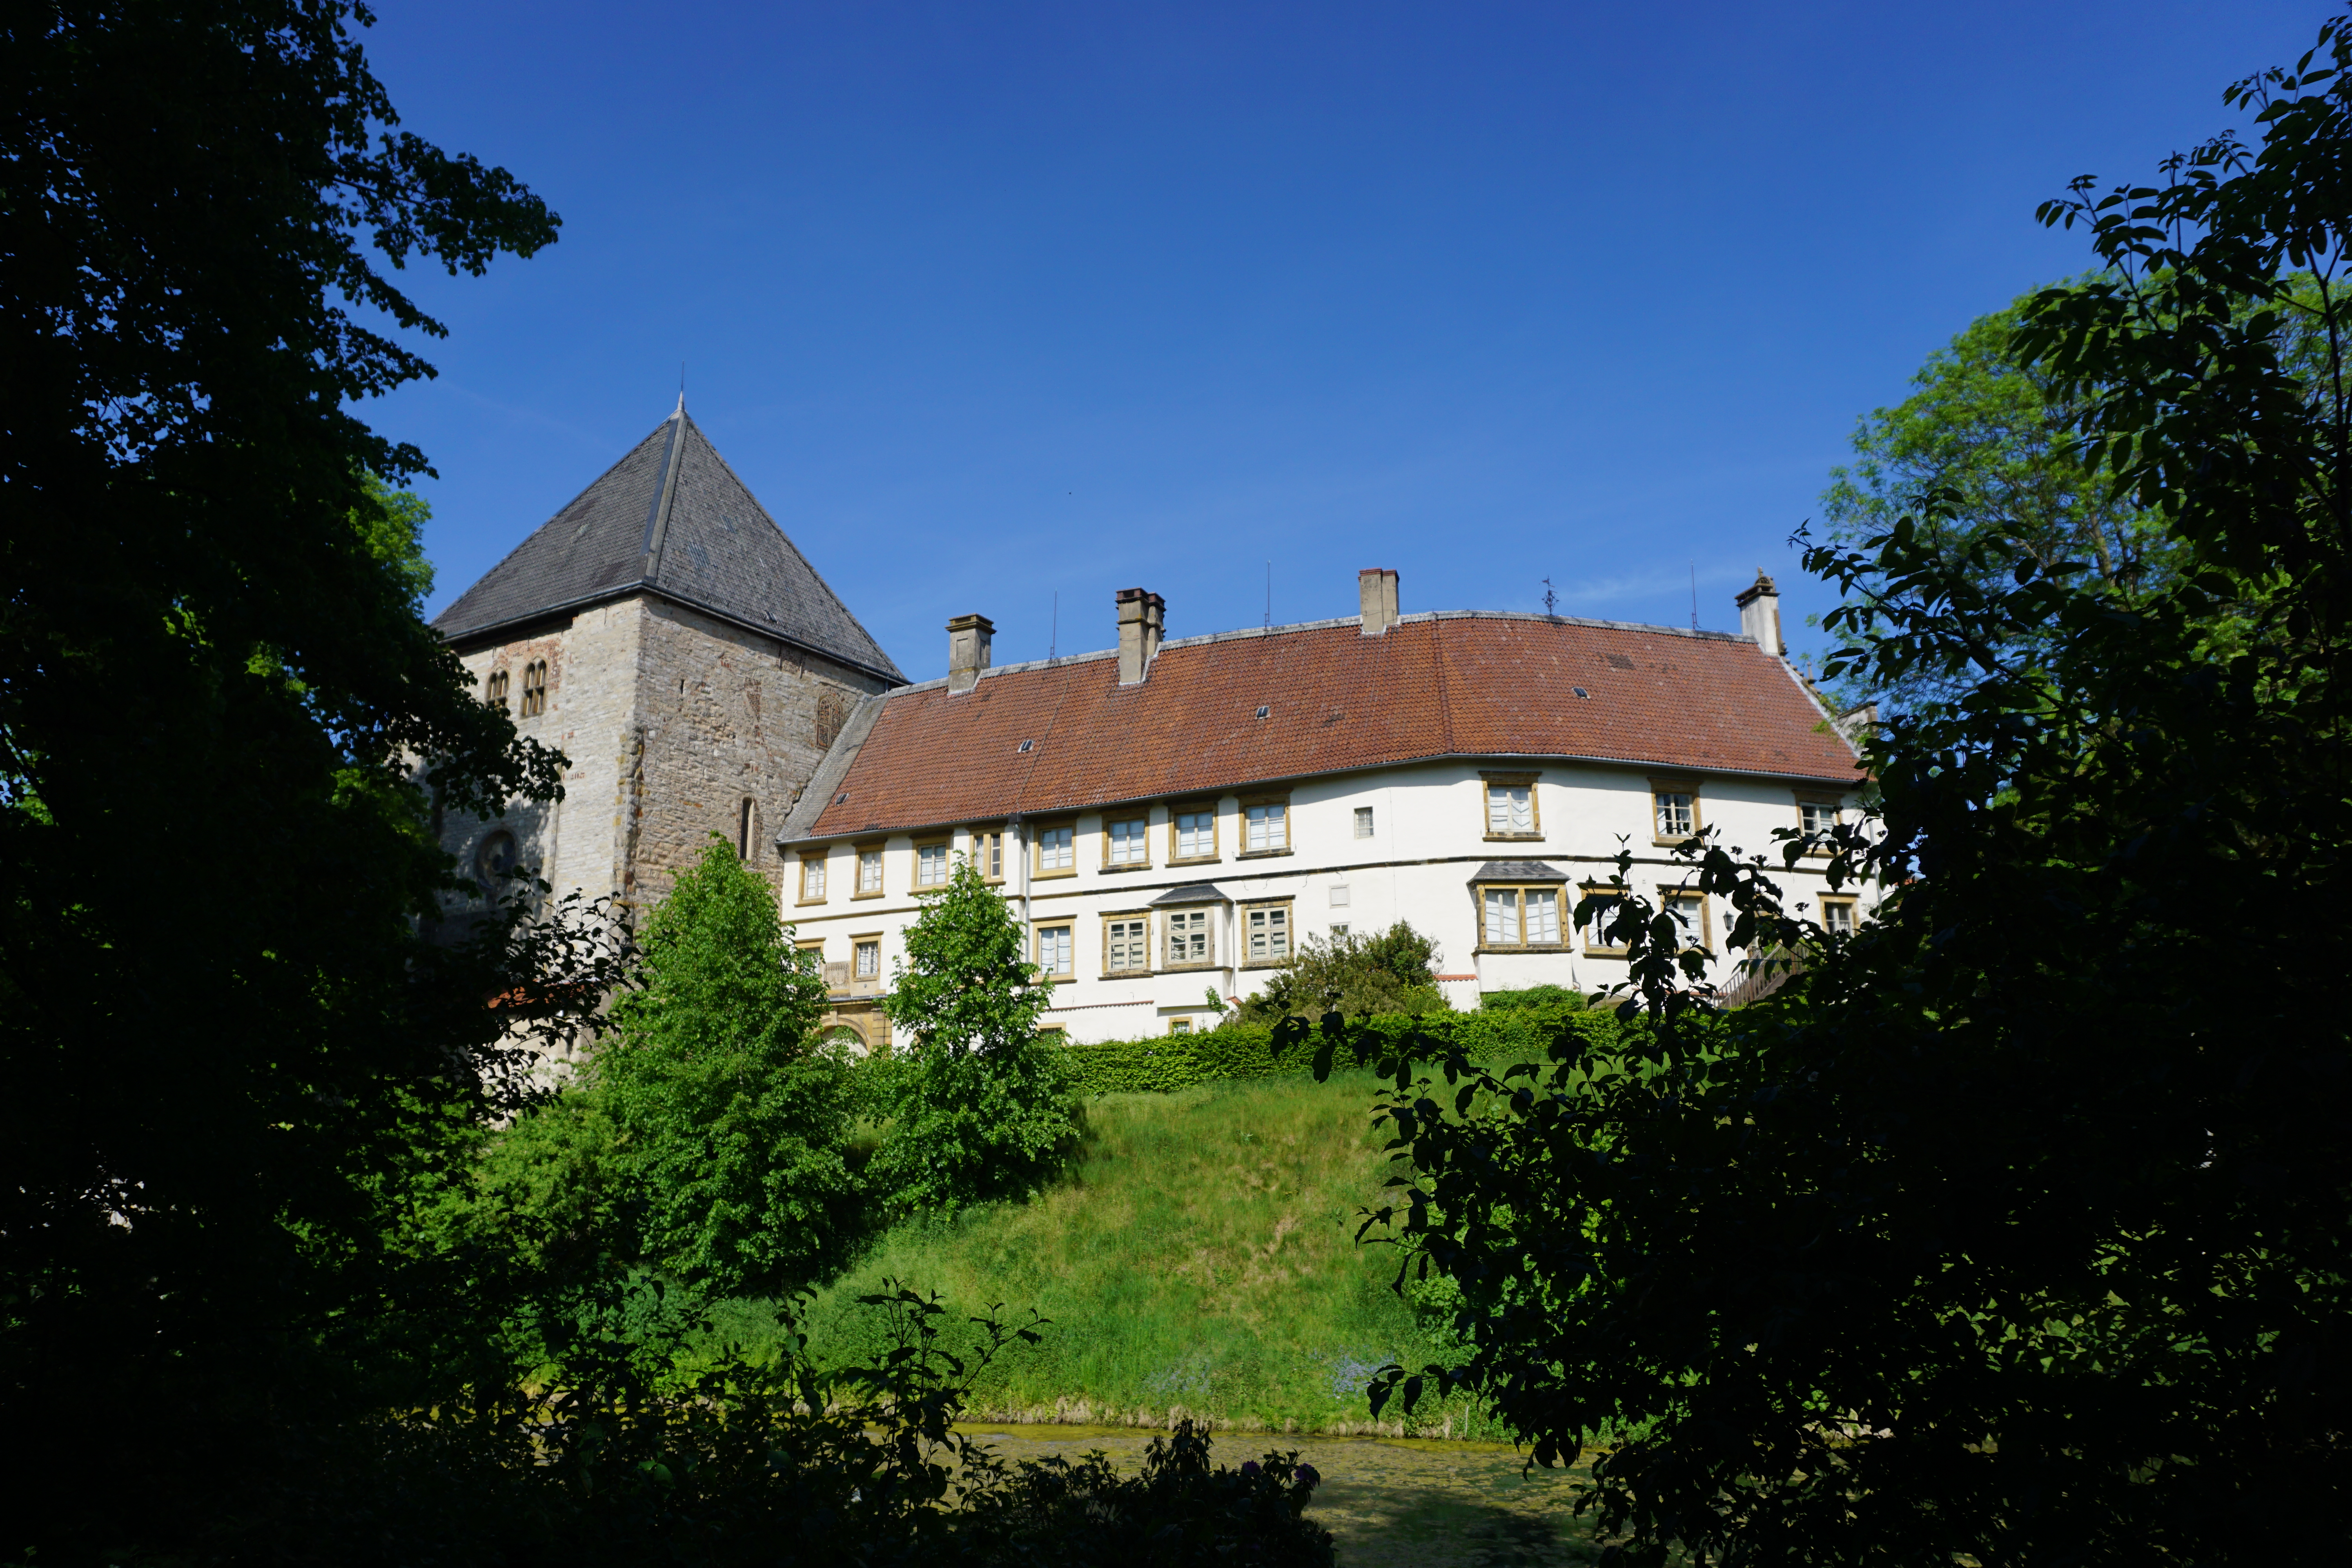 Wasserschloss Rheda, Rheda-Wiedenbrück.
